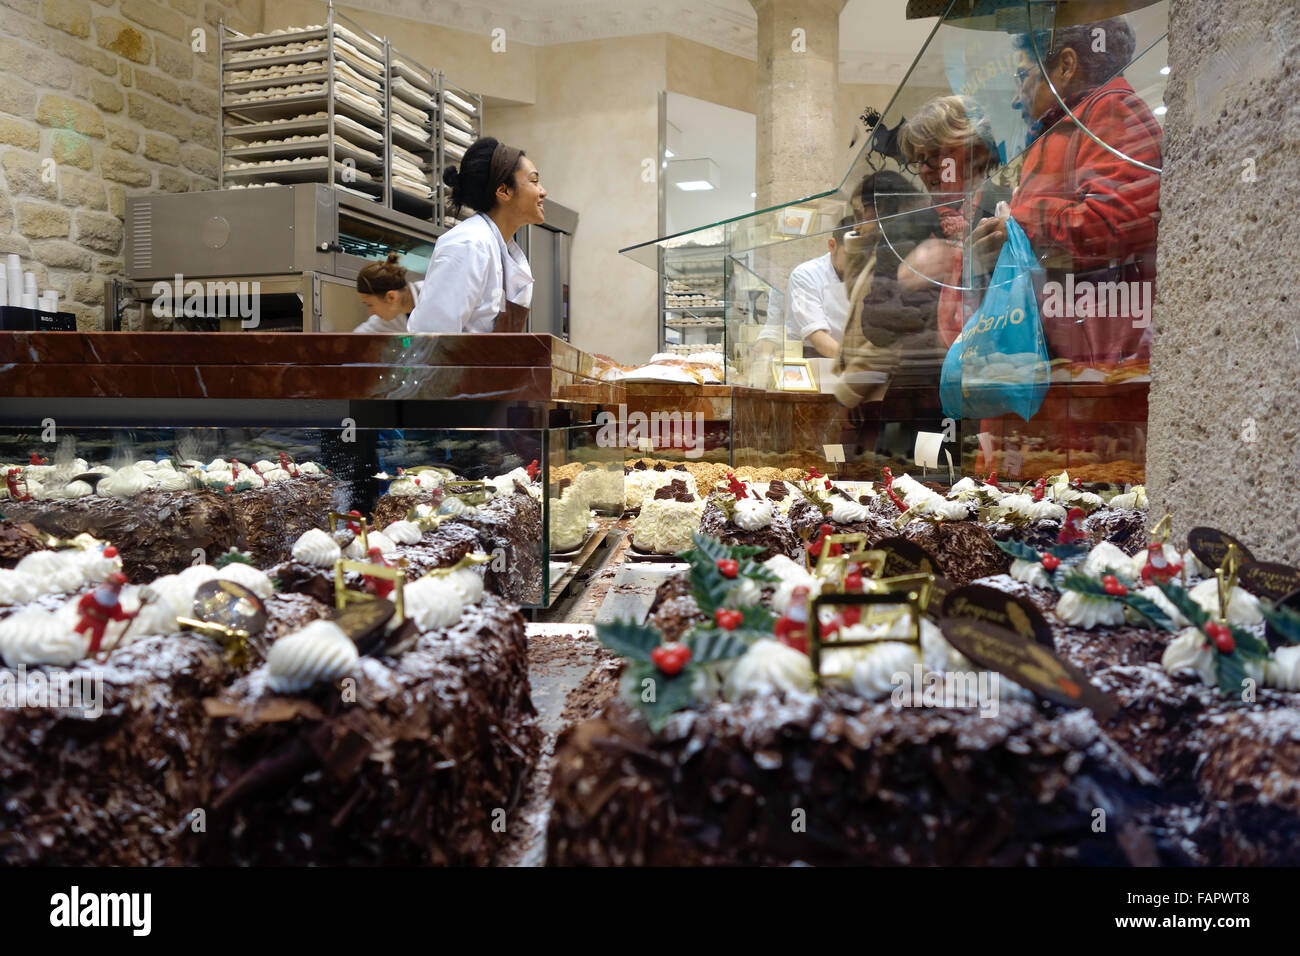 Les clients participant à des travailleurs, des gâteaux à la meringue aux merveilleux de Fred, Paris, France. Banque D'Images